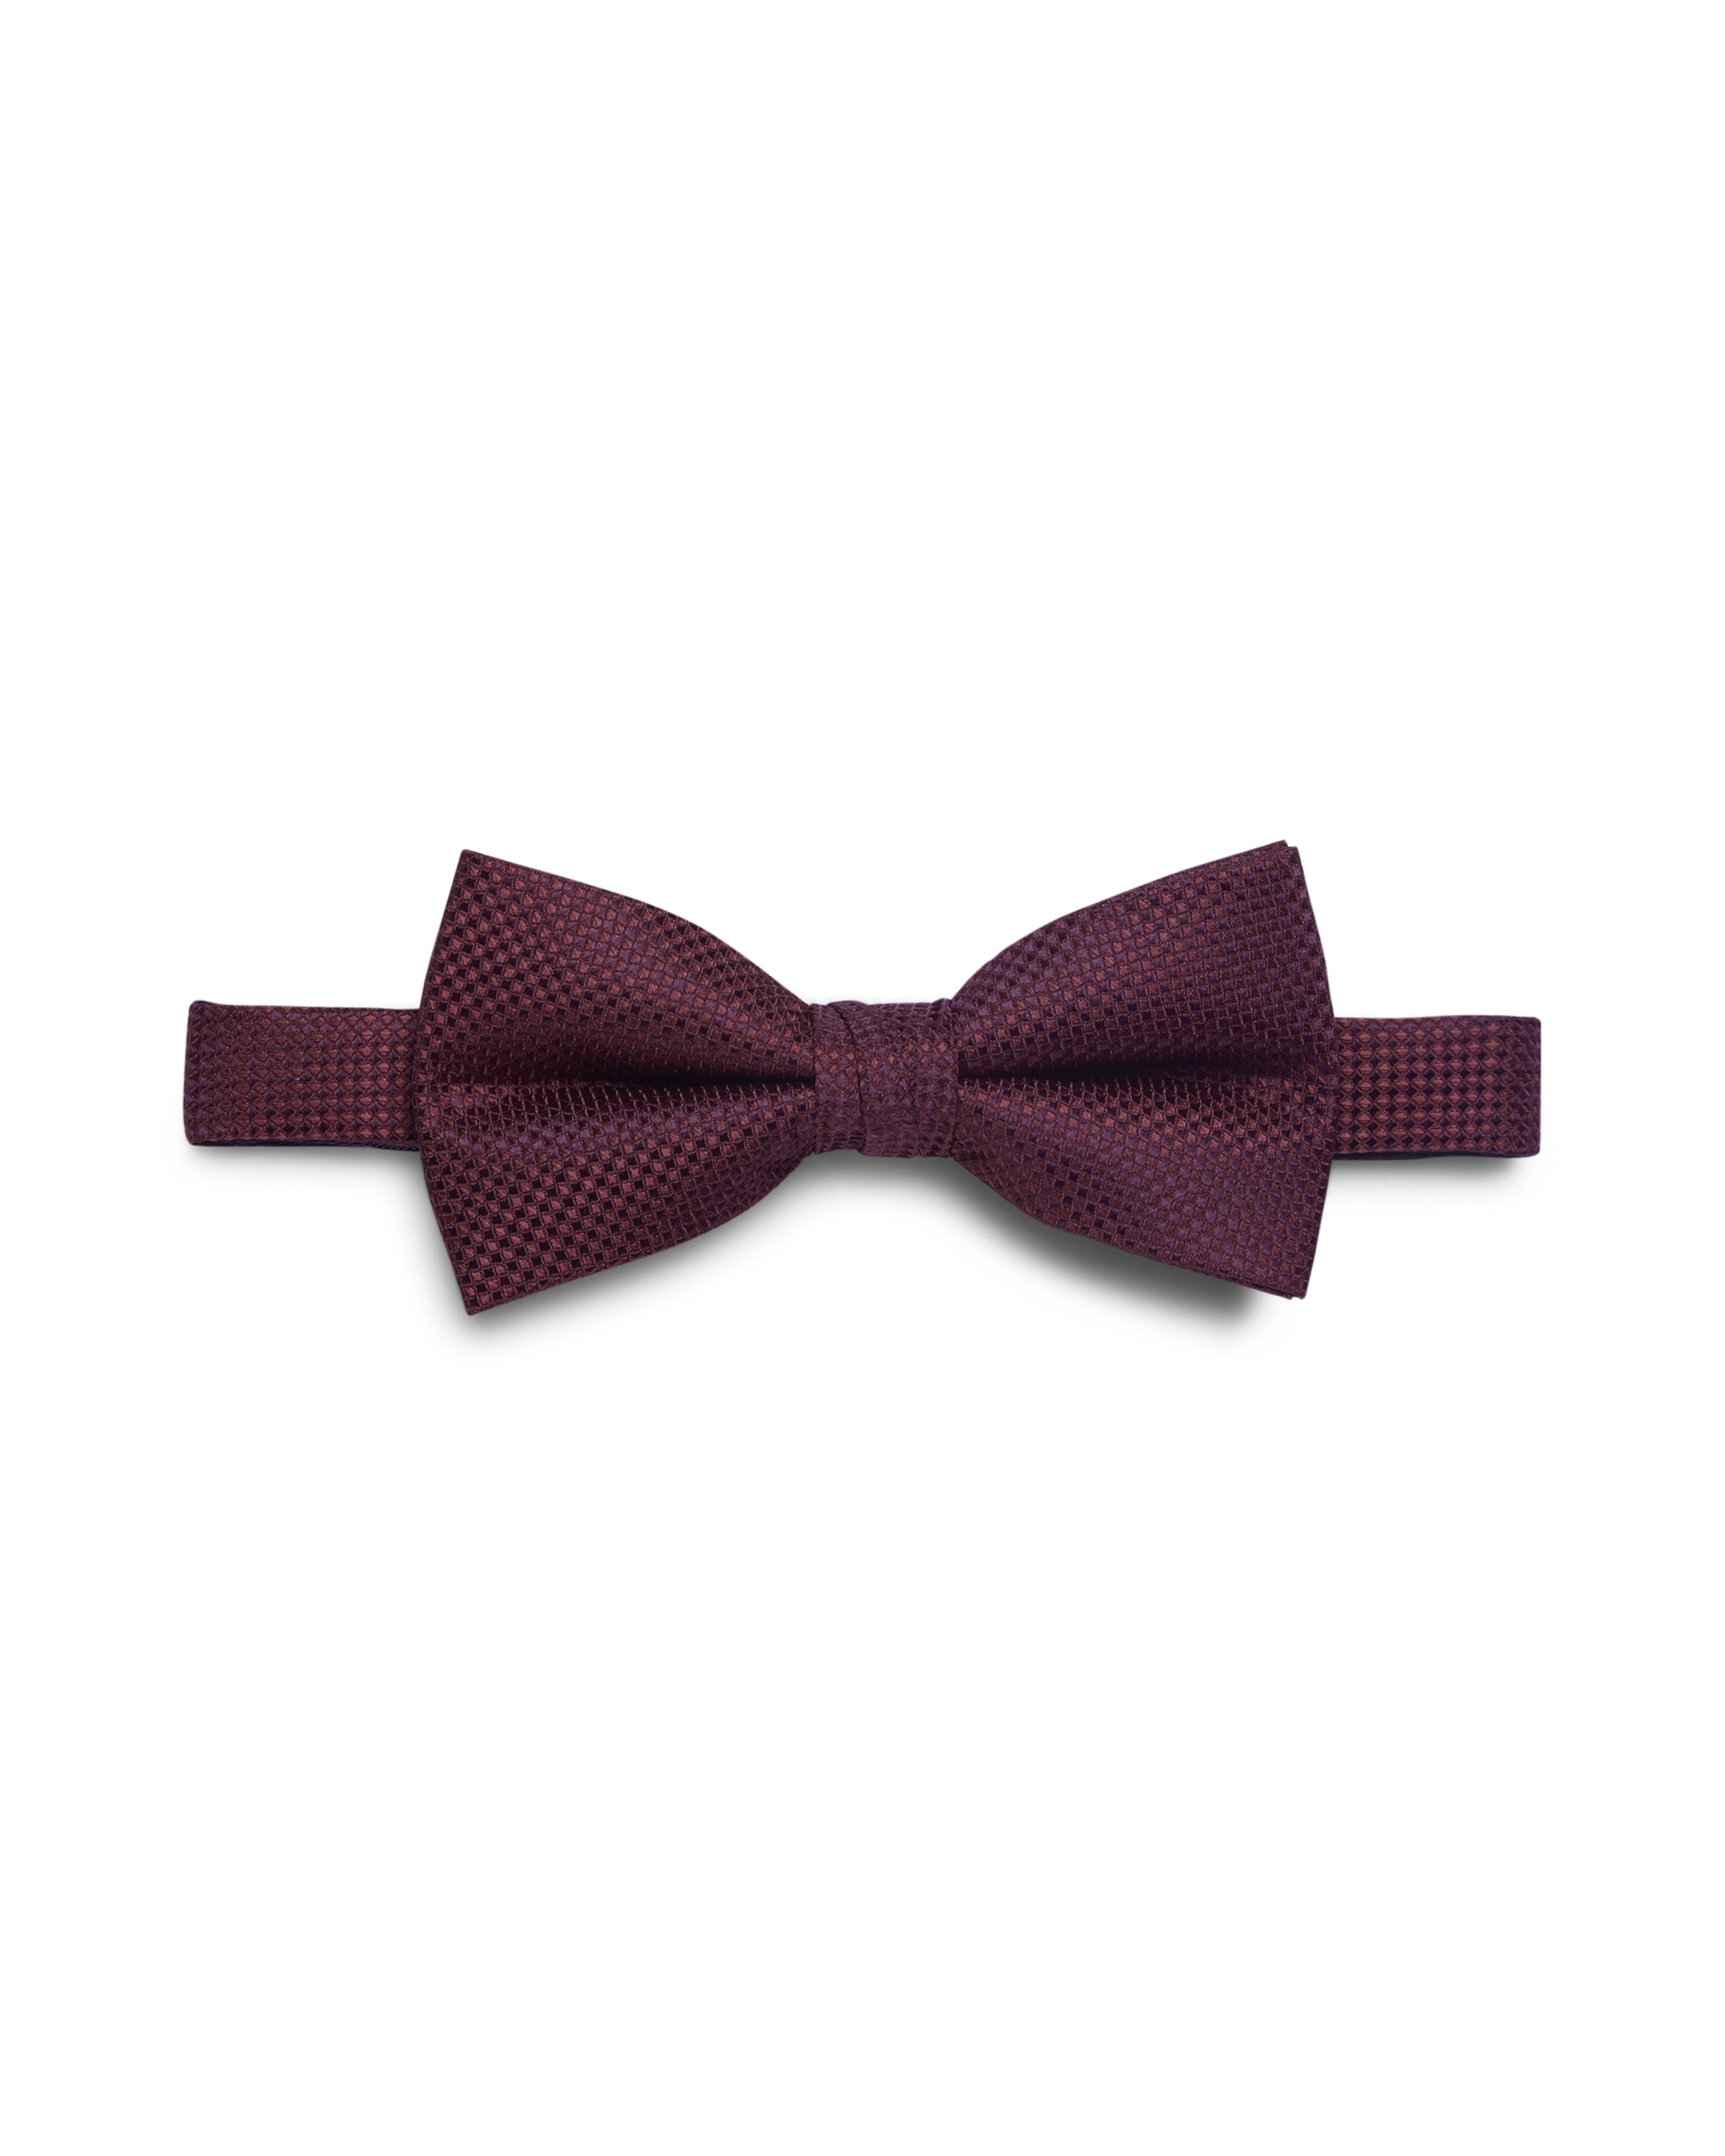 Krawatte »JACCOLOMBIA BOWTIE NOOS«